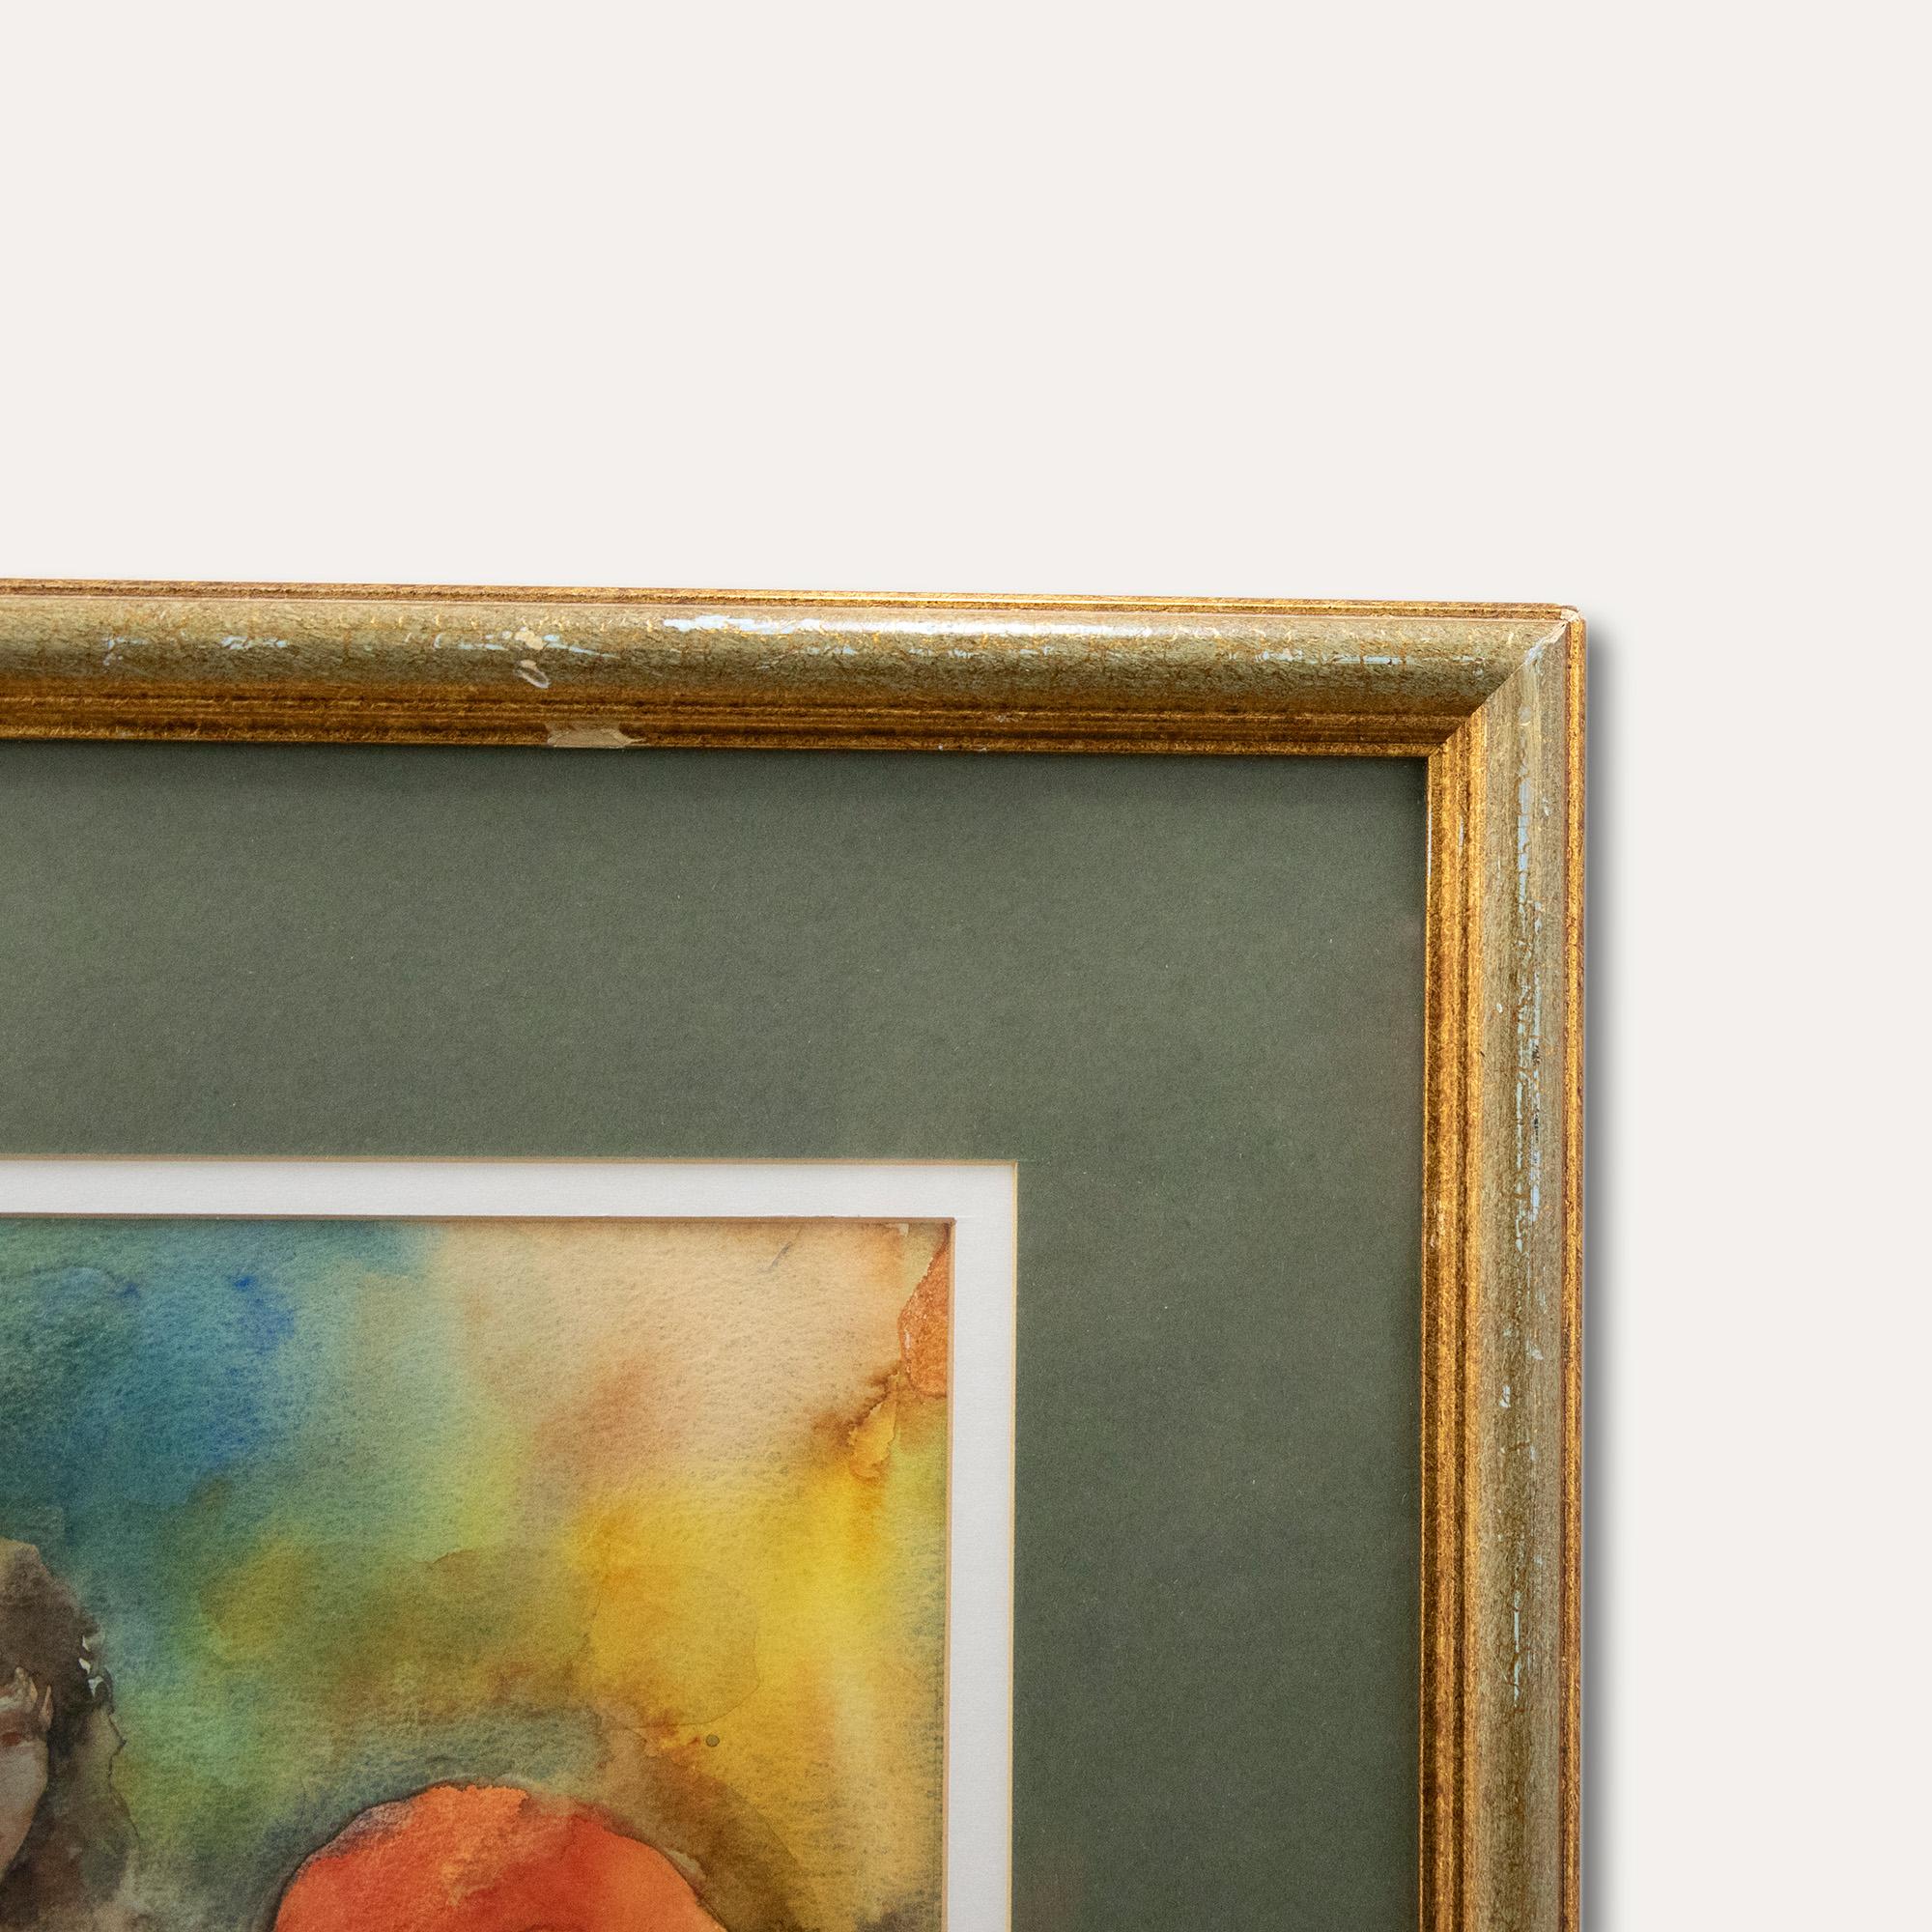 Eine charmante Aquarellstudie, die ein sitzendes Lebensmodell mit einem großen roten Hut zeigt. Signiert unten links. Präsentiert in einem rustikalen vergoldeten Rahmen und doppeltem Passepartout. Auf dem Papier.